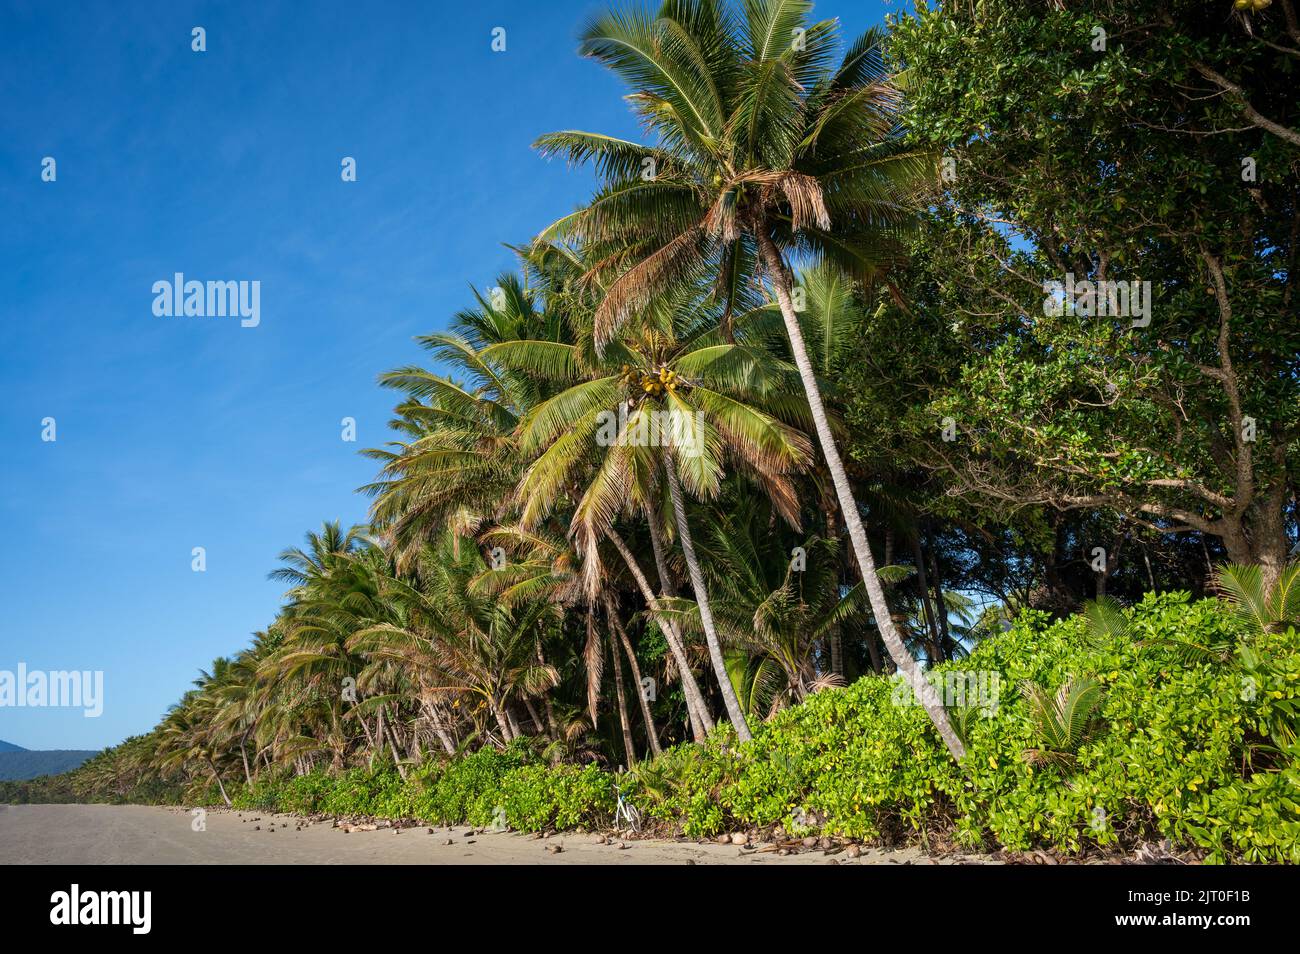 Das 4 Meilen lange, von Kokos gesäumte Strandresort an einem wunderschönen Tag am blauen Himmel in Port Douglas, angrenzend an das Sheraton Mirage Resort in Queensland, Australien. Stockfoto